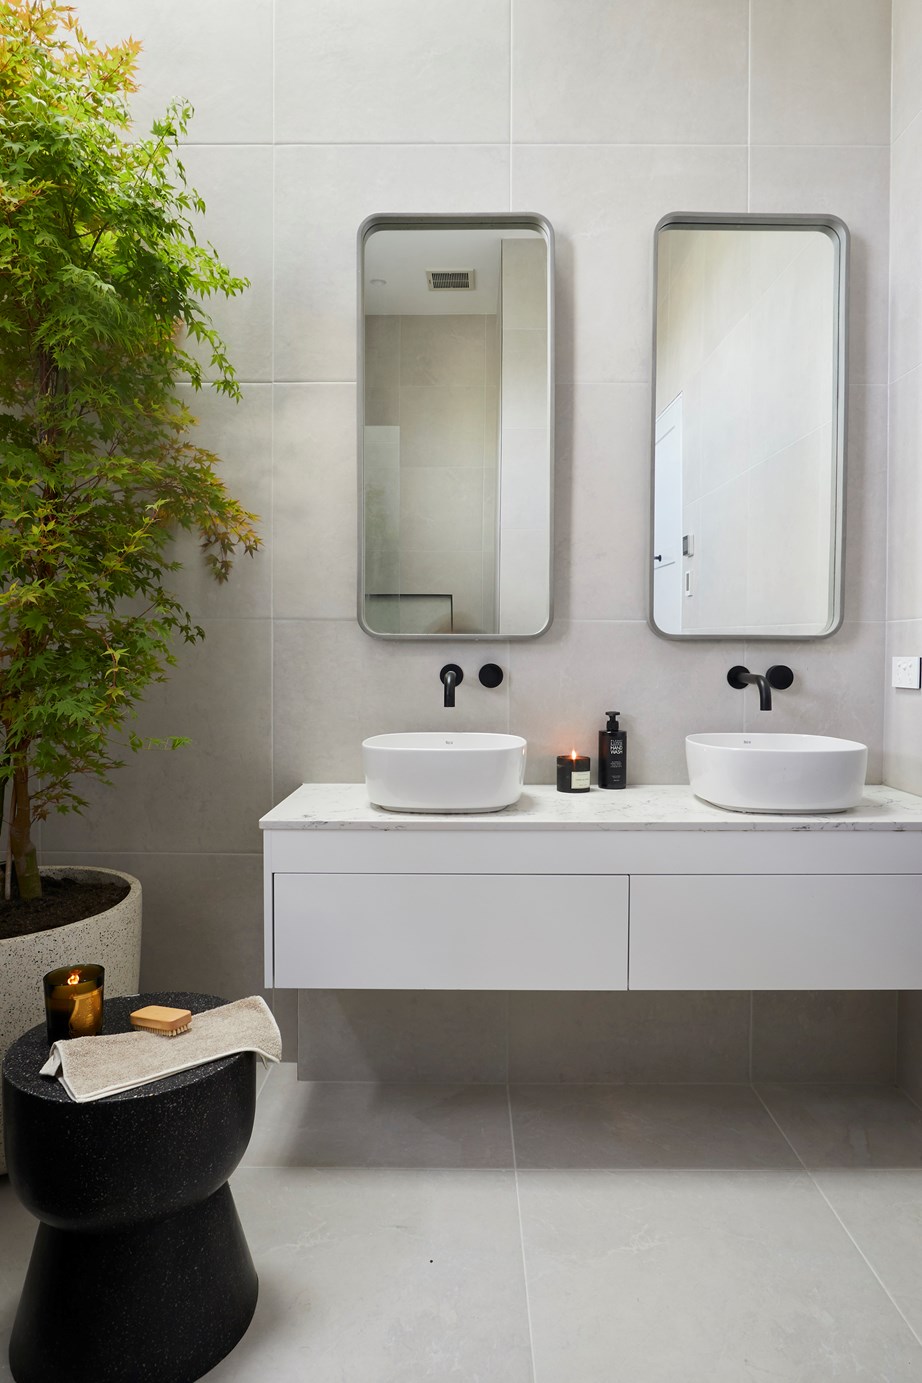 Tha hồ gom nhặt ý tưởng cho căn phòng tắm gia đình với những thiết kế đẹp miễn chê - Ảnh 10.